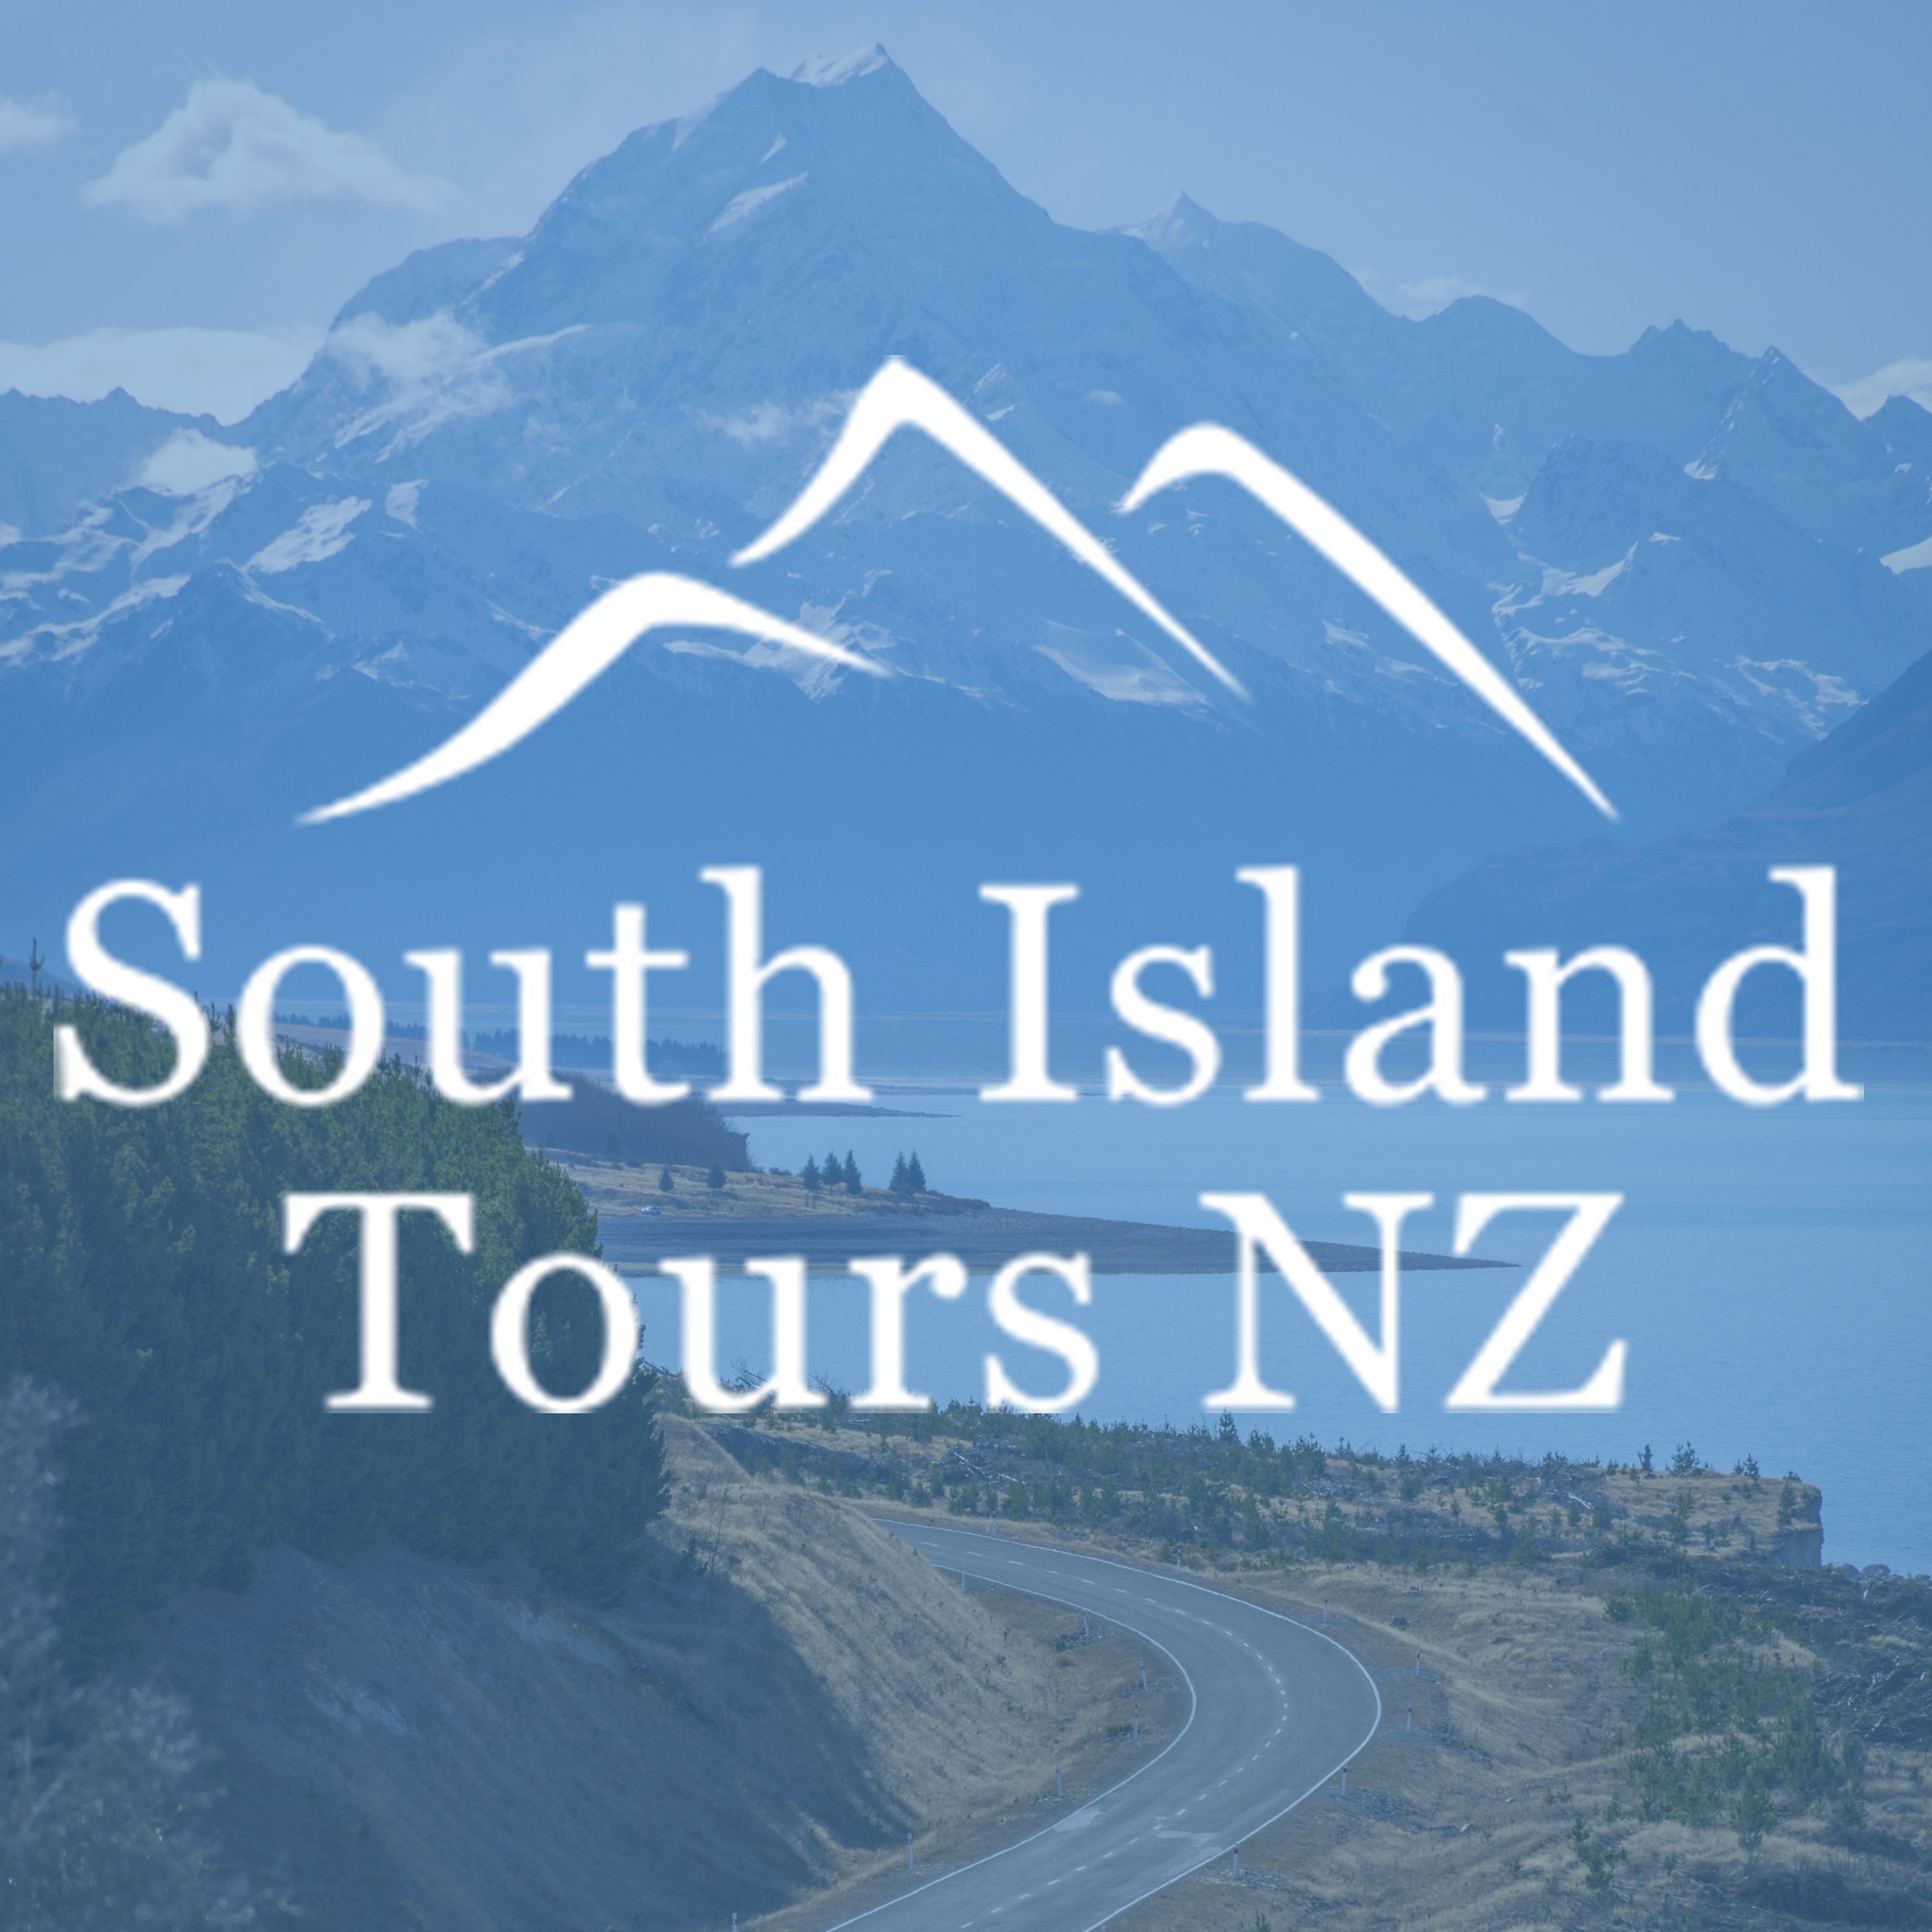 South Island Tours NZ